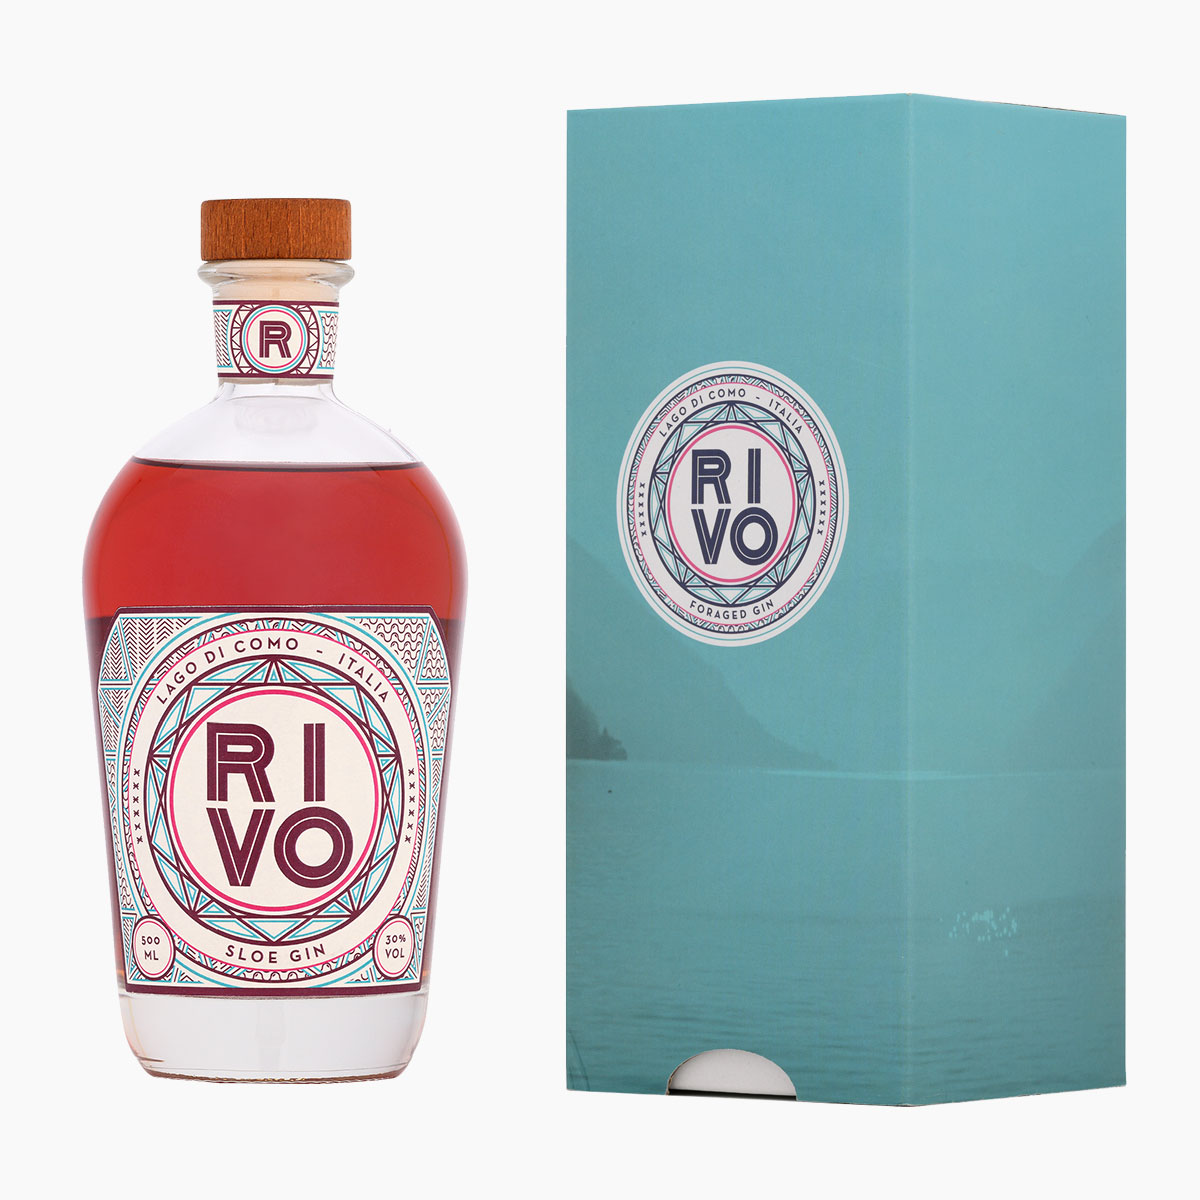 Brug RIVO Sloe Gin + Gaveæske til en forbedret oplevelse